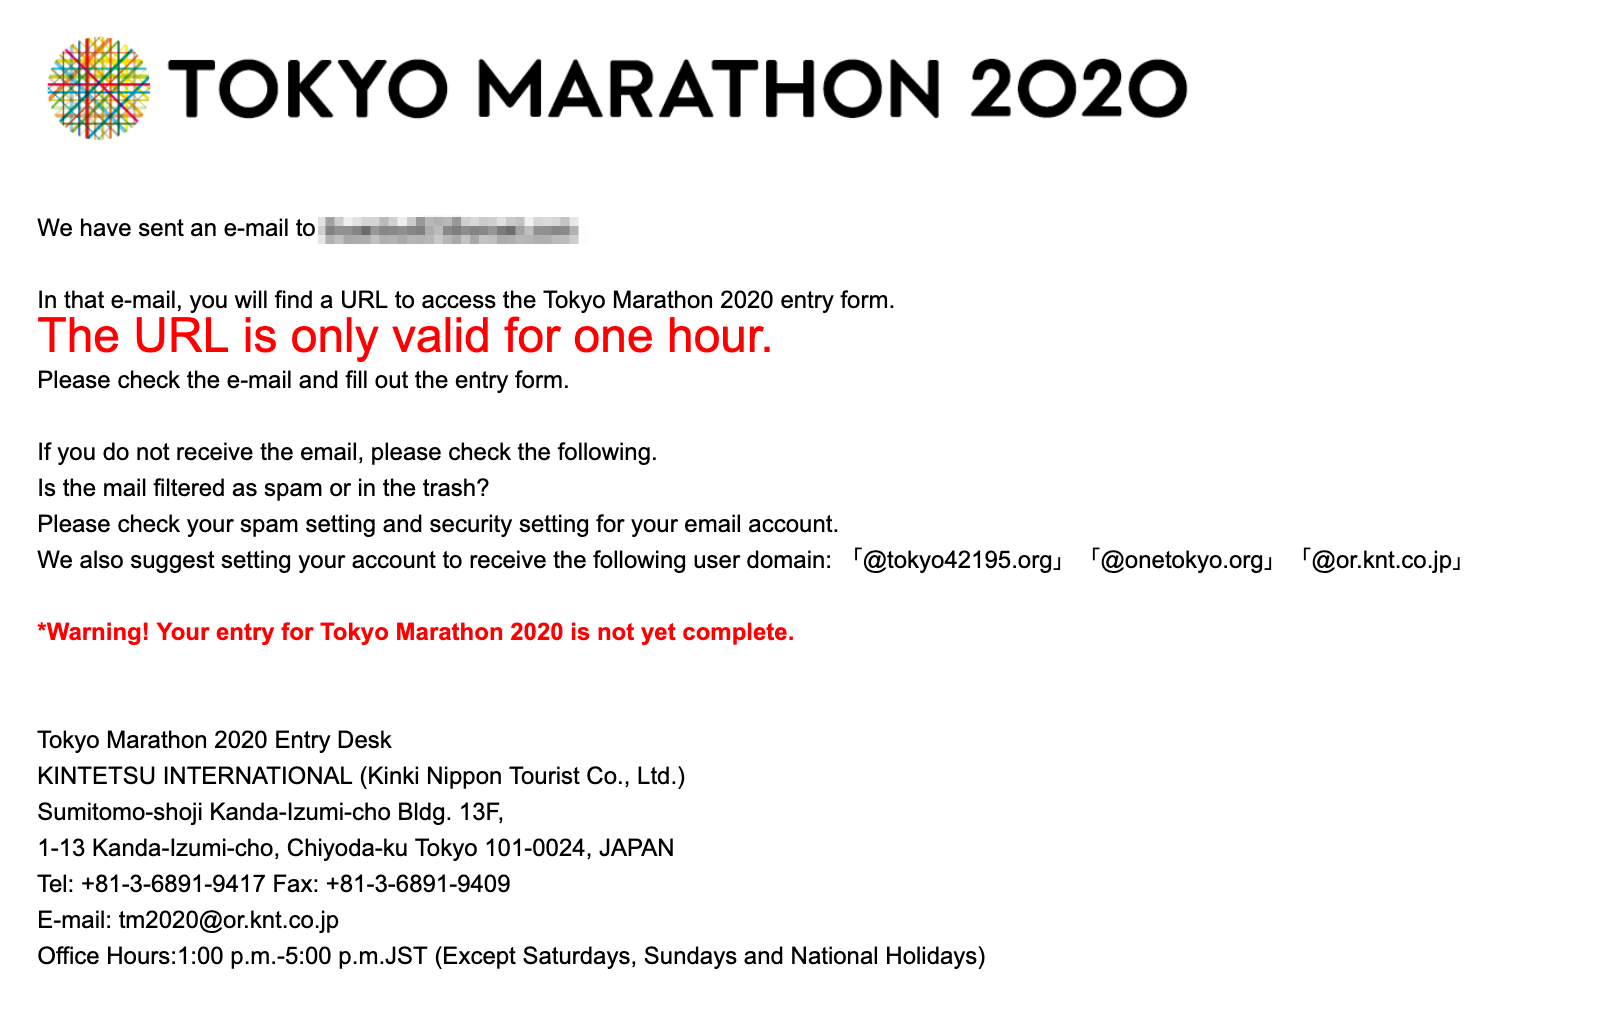 Hướng dẫn đăng ký xổ số dành suất tham gia Tokyo Marathon 2020 - dang ky tokyo marathon 2020 3